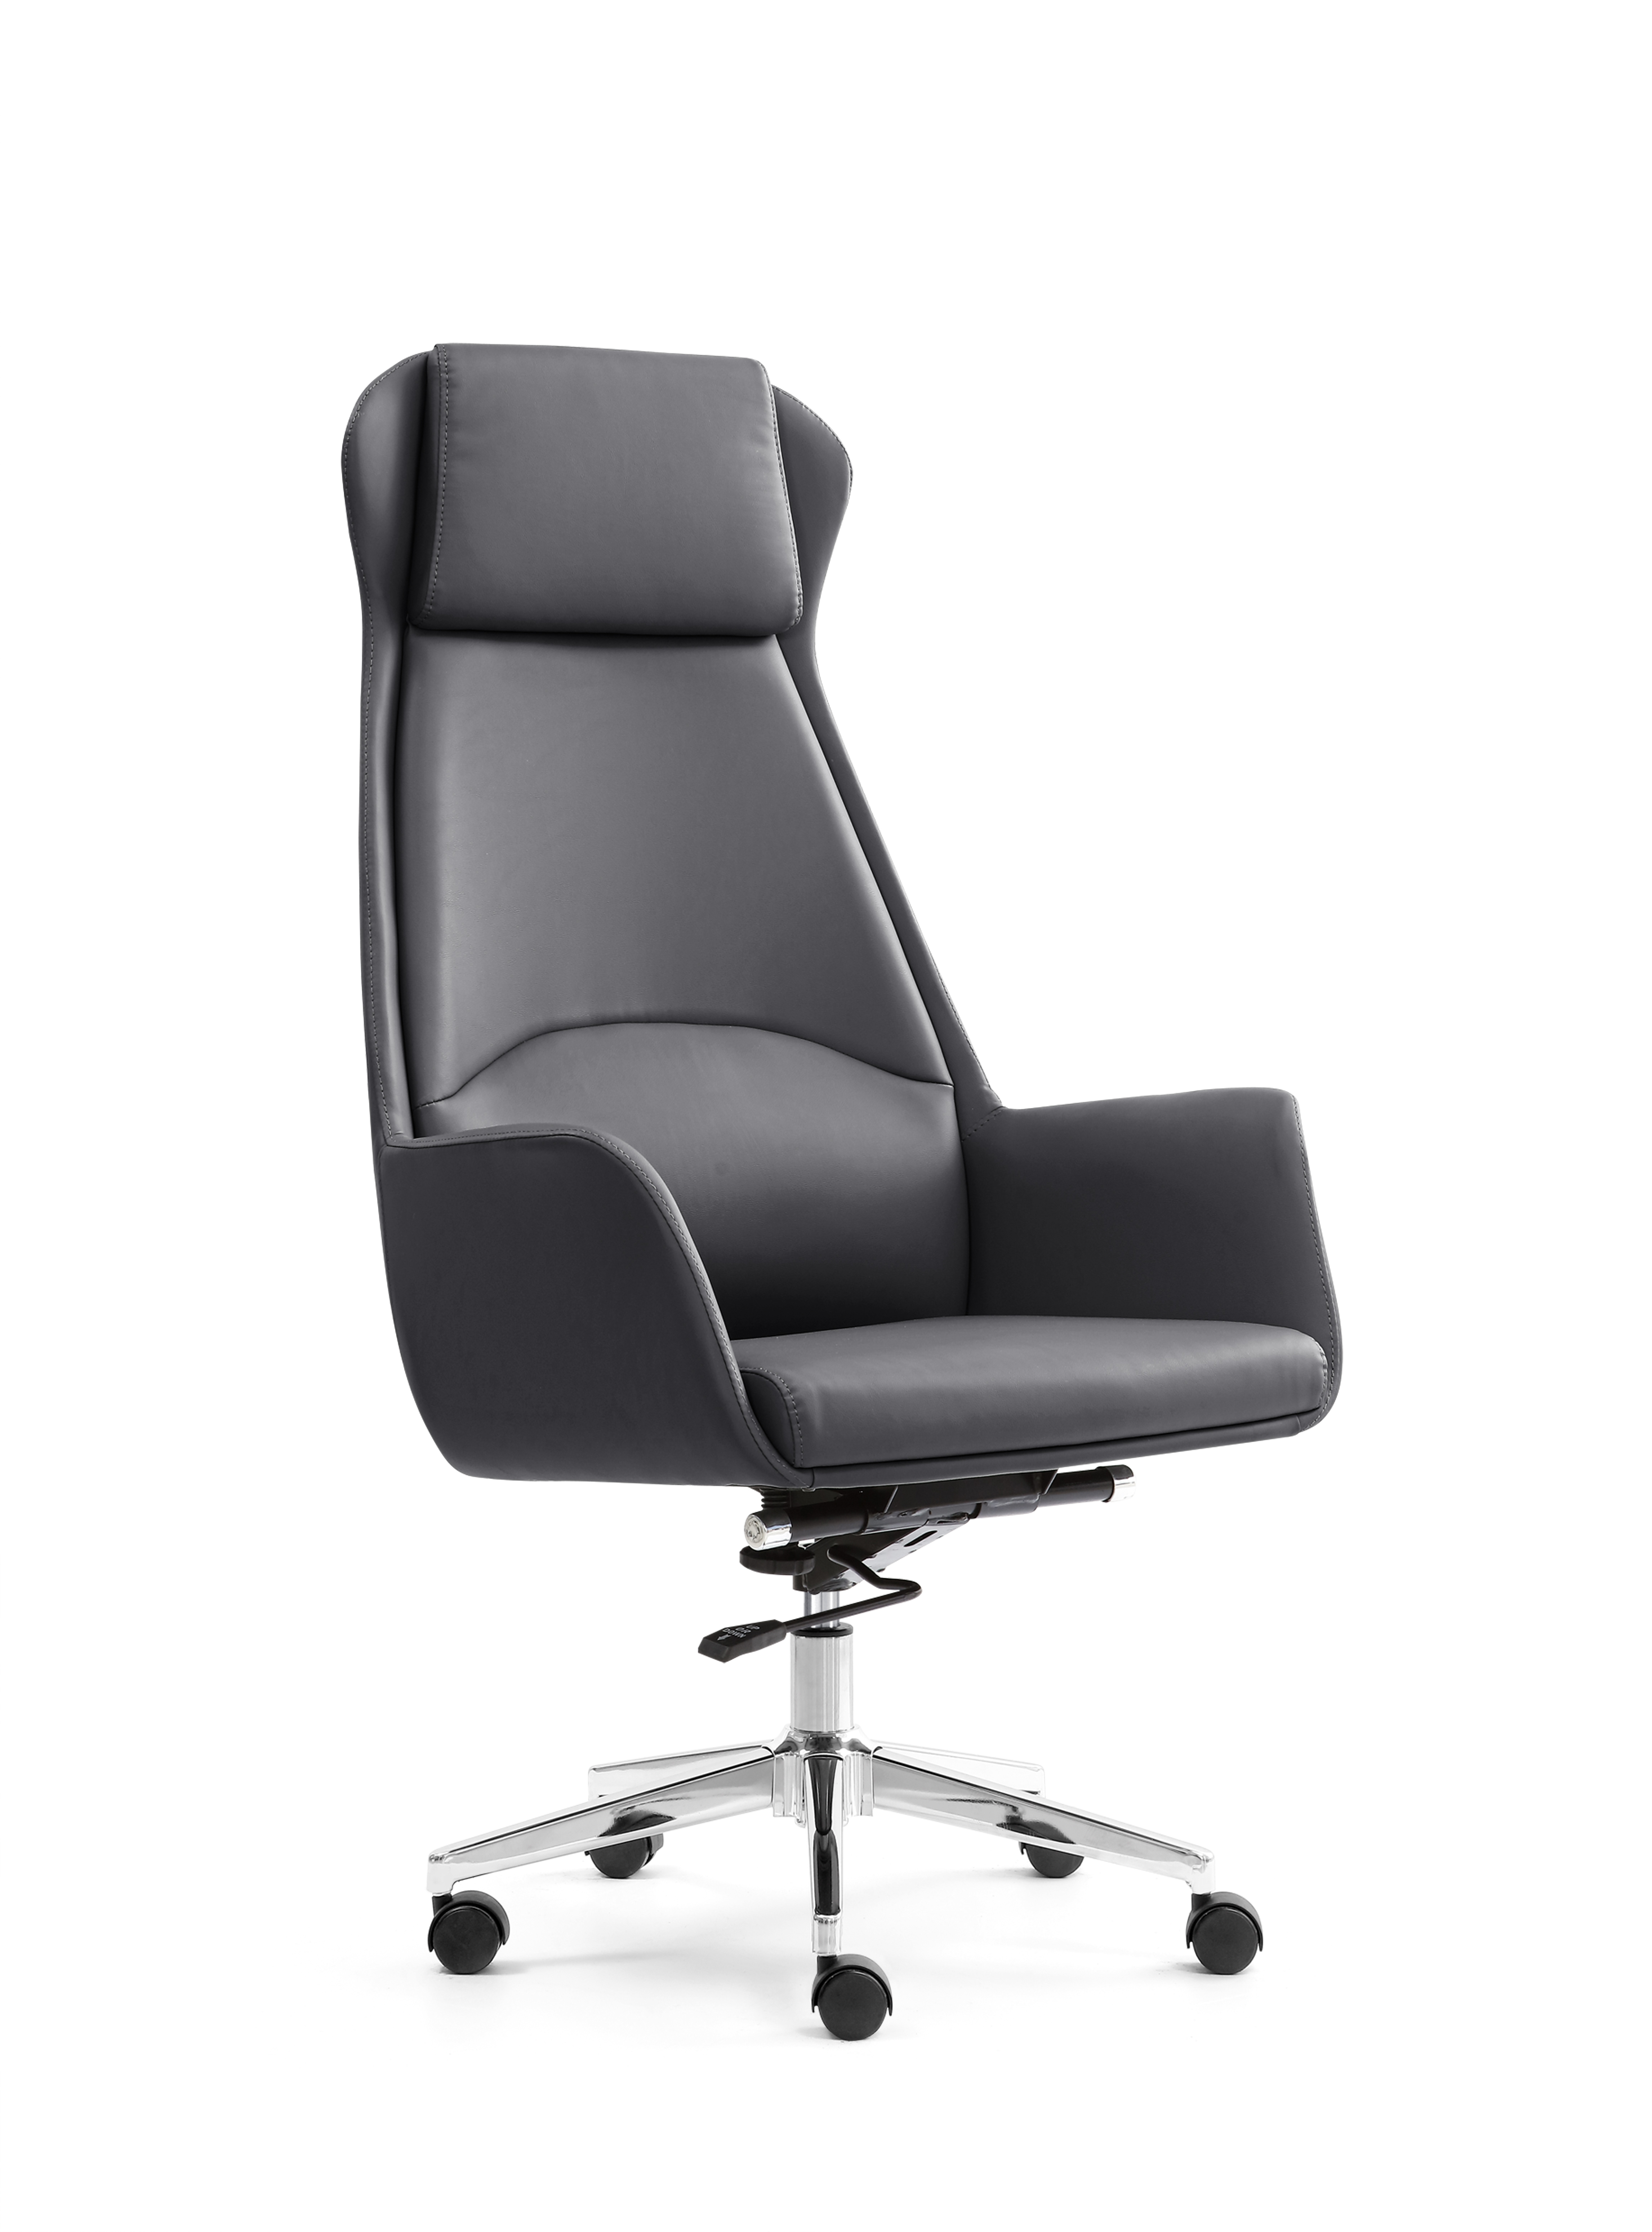 职员电脑椅会客椅靠背会议椅办公室弓形固定扶手皮椅 现代简约图片